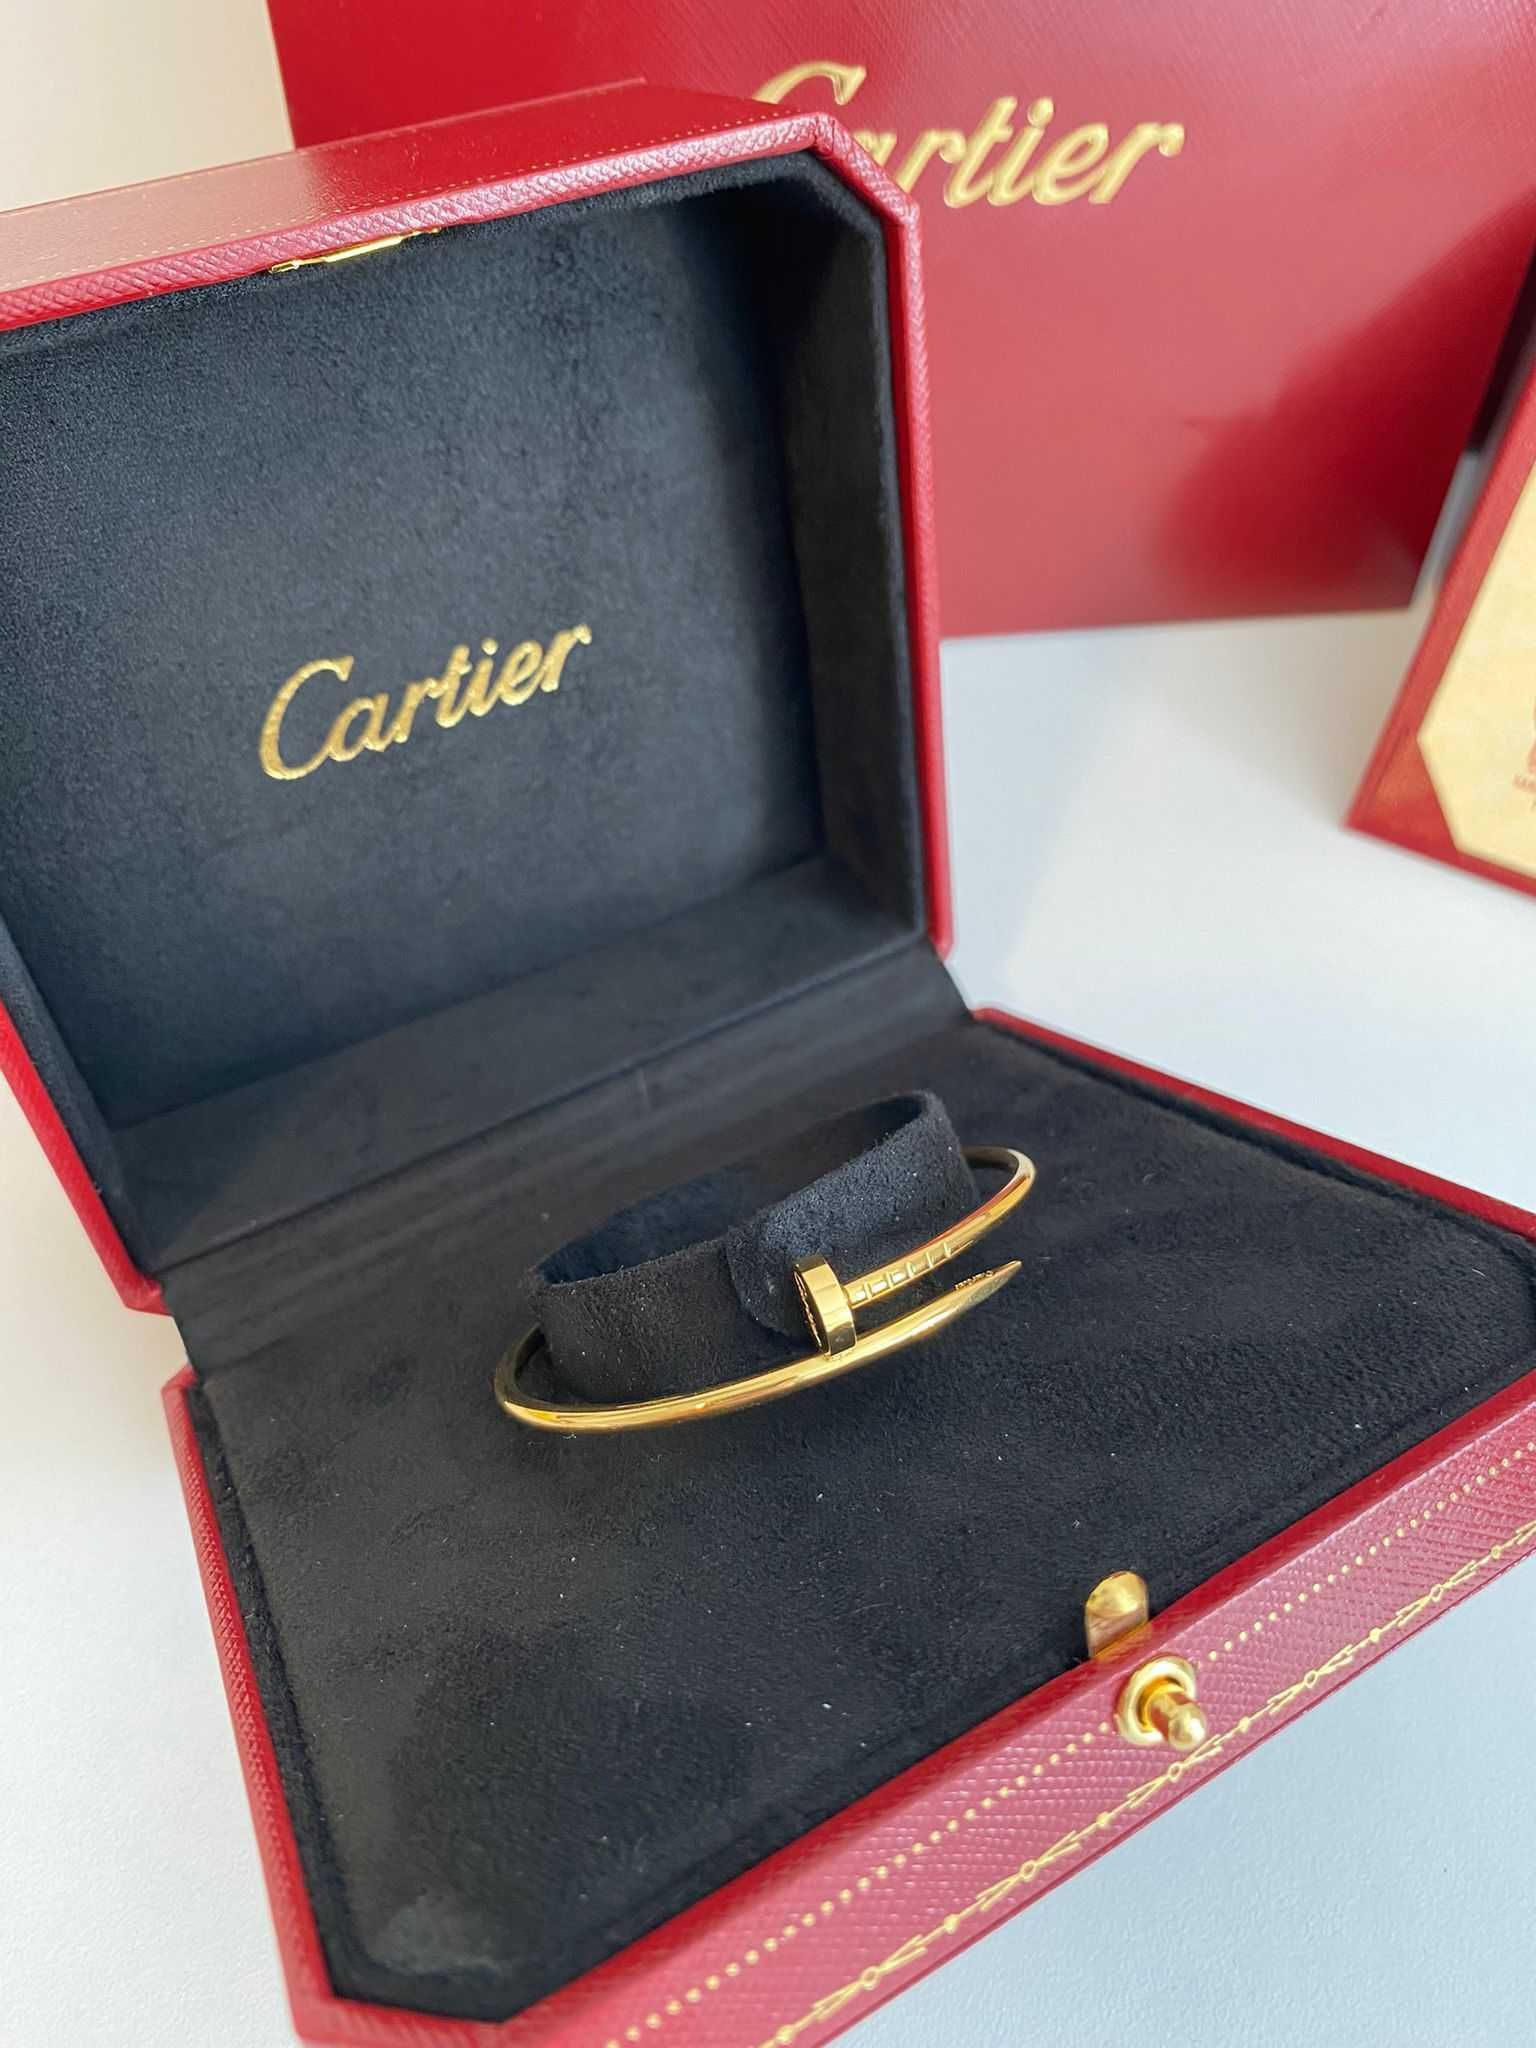 Brățară Cartier Juste un Clou Small 15 Gold 24K cu cutie